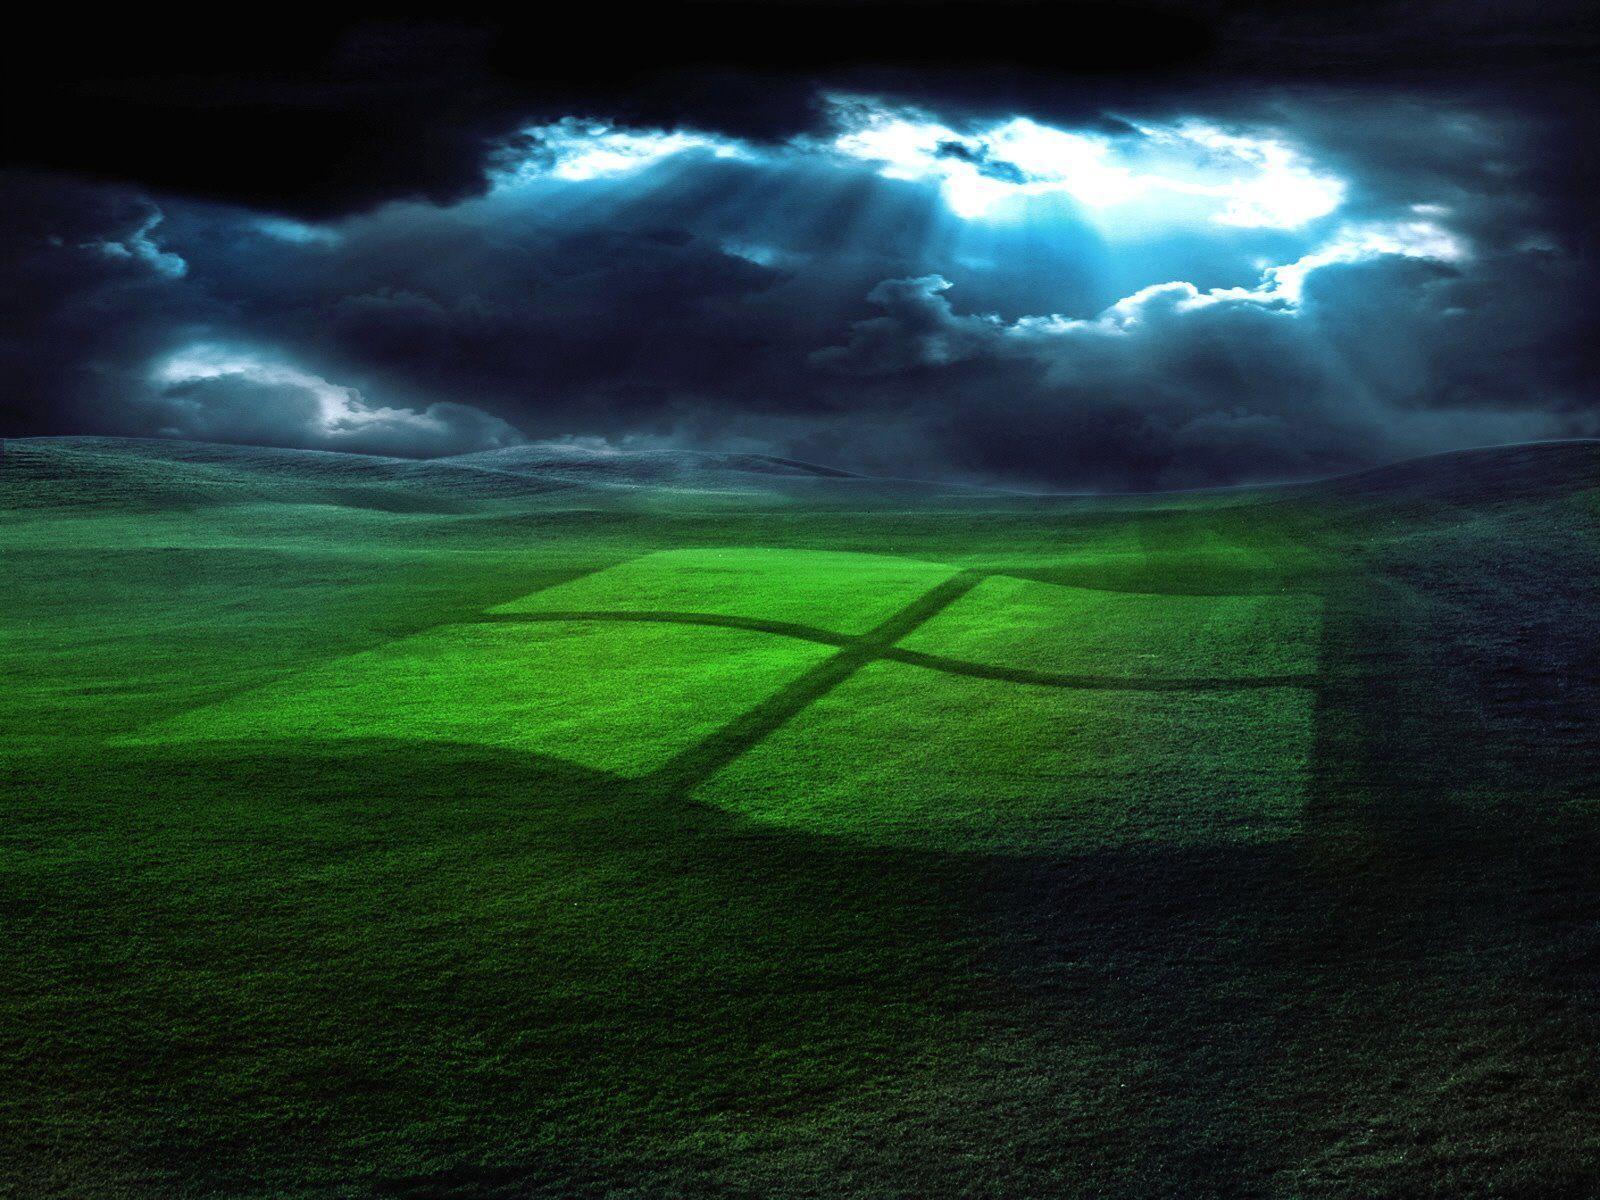 Desktop Wallpaper · Gallery · Computers · In storm windows XP